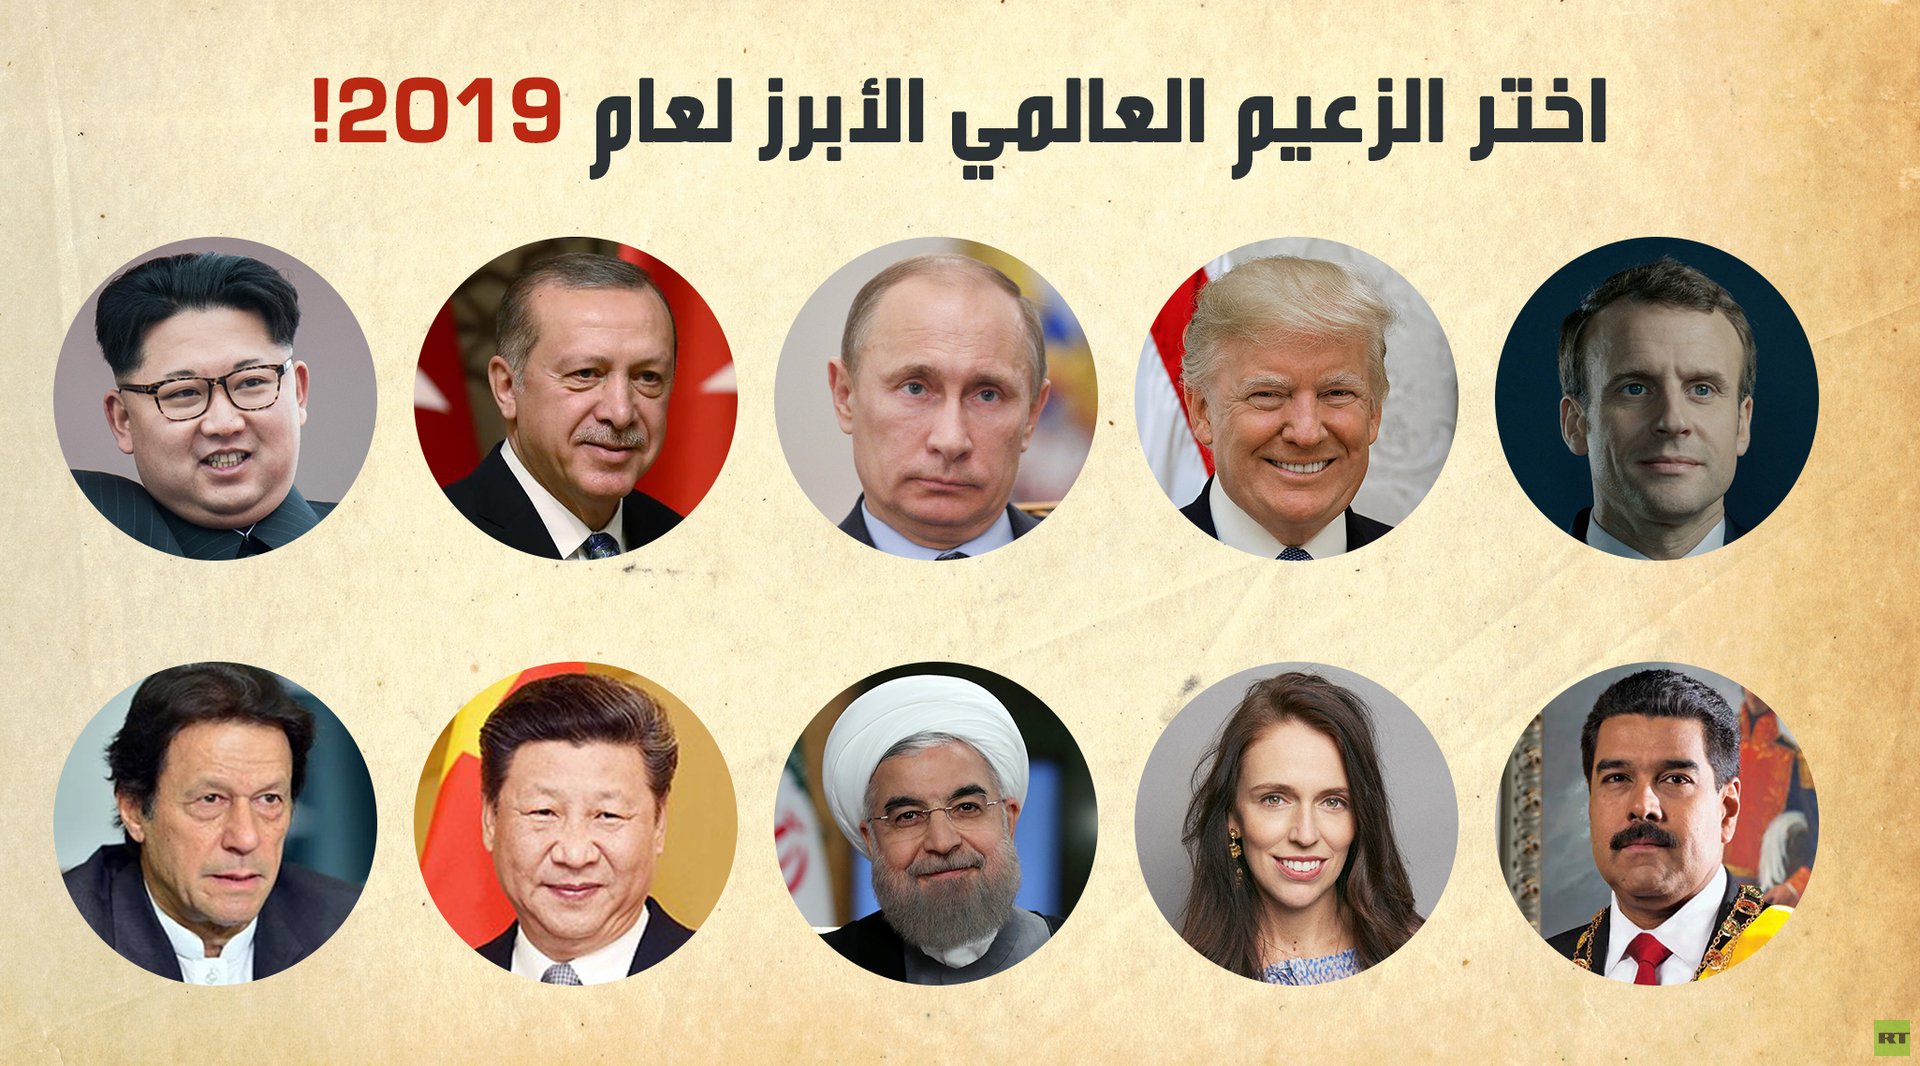 الزعيم العالمي الأبرز للعام 2019